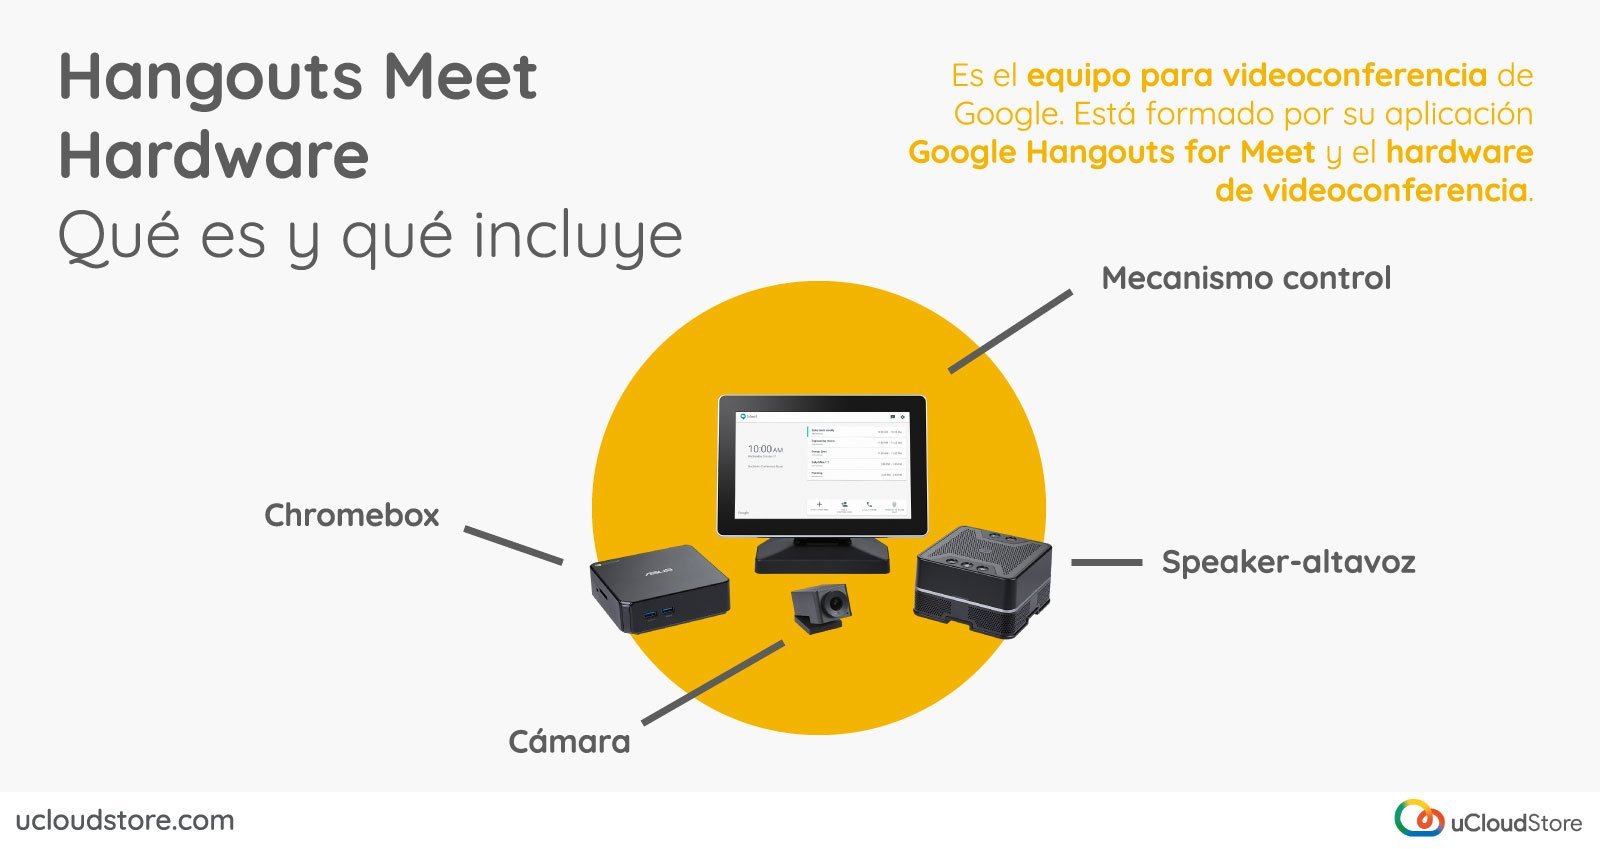 Imagen con los distintos componentes de Hangouts Meet Hardware